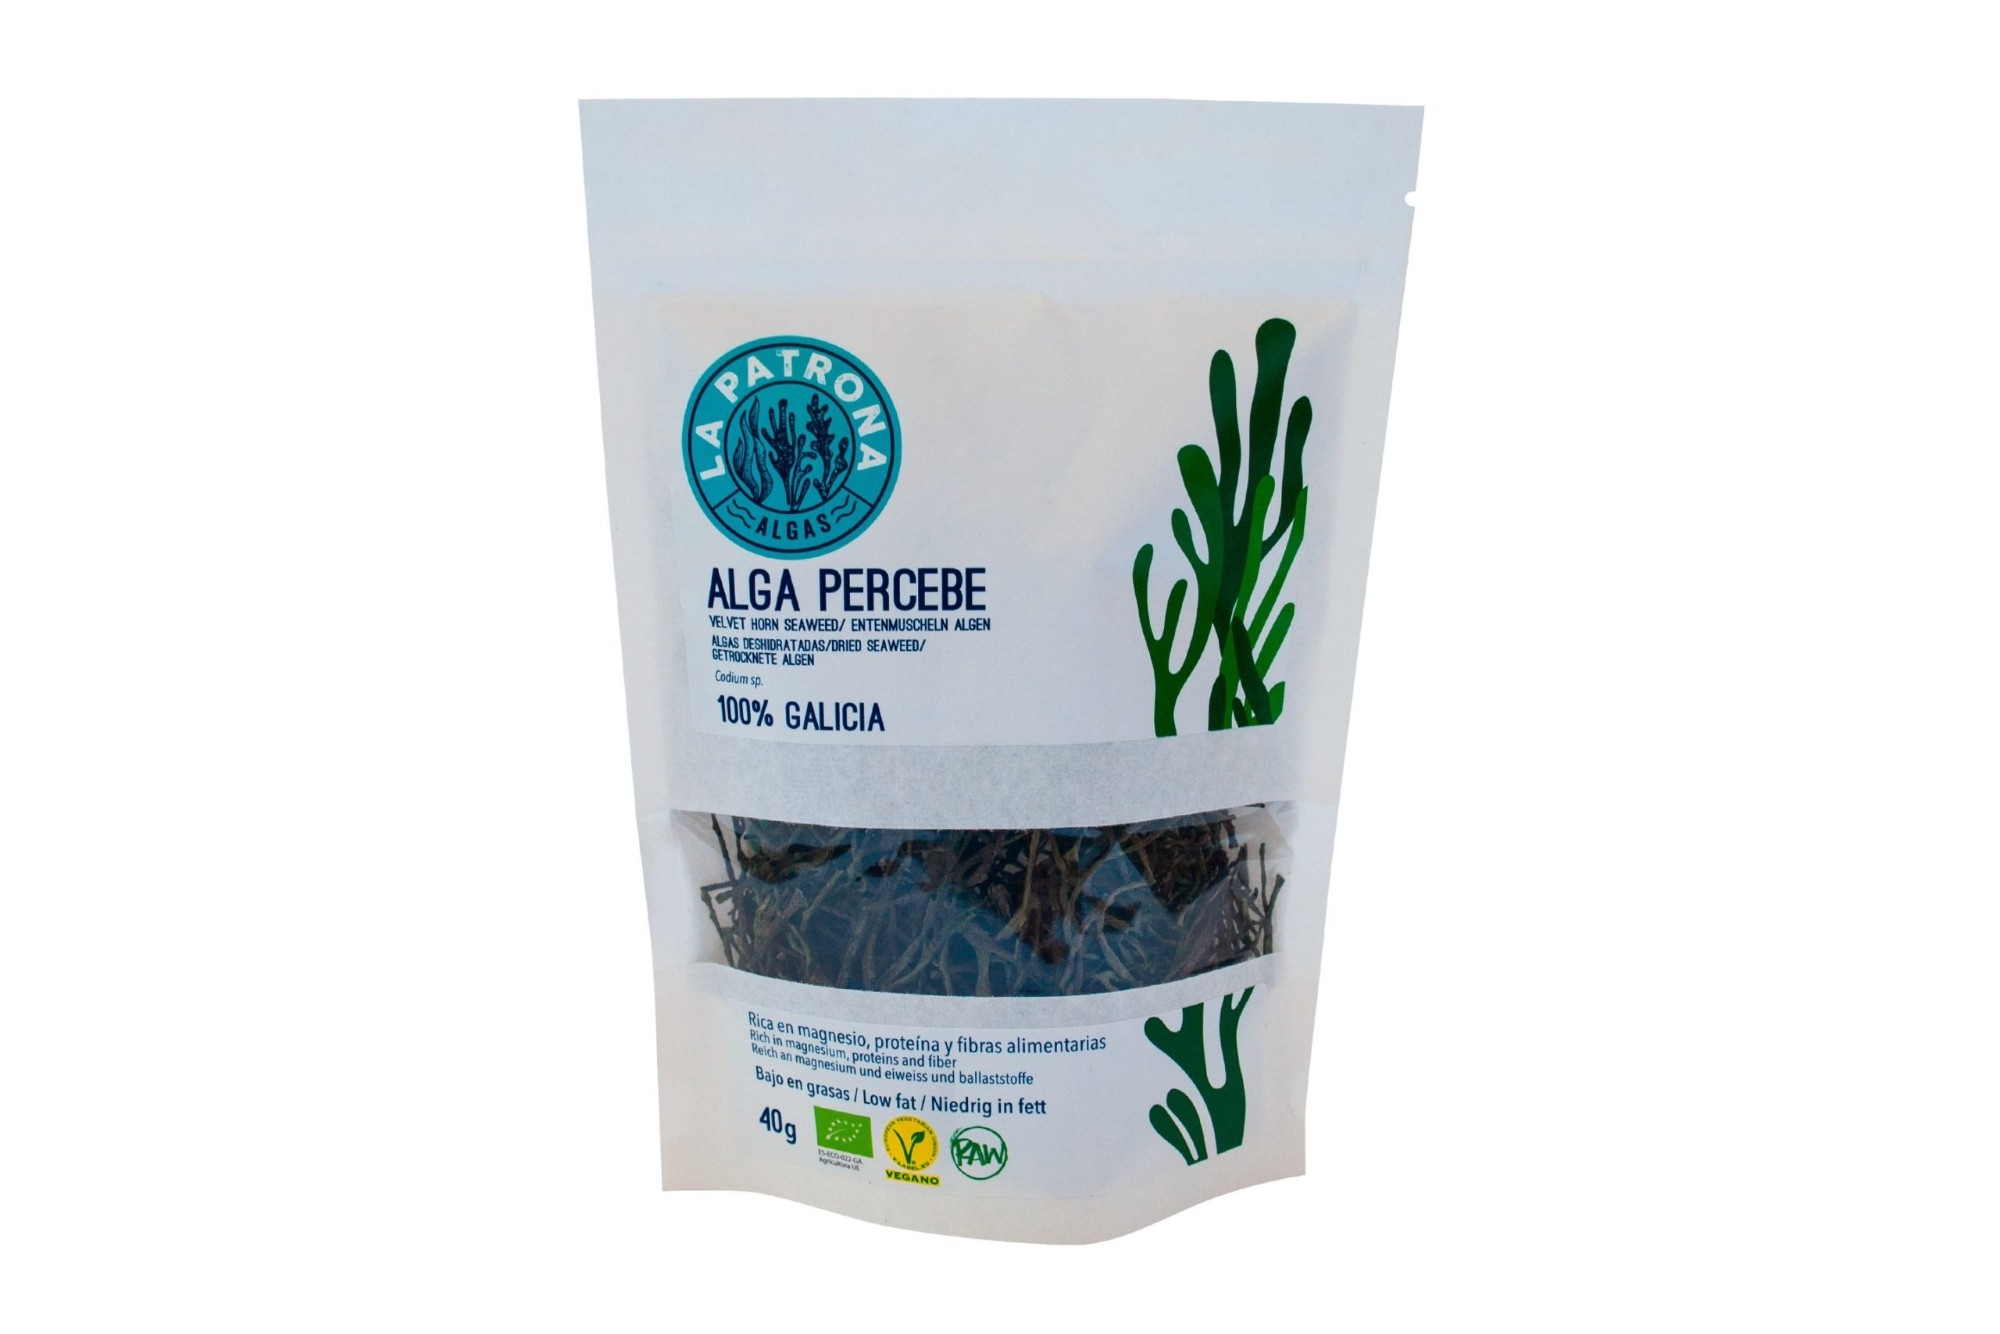 Alga Percebe Algas Deshidratadas Eco 40 Gr. 100%galicia